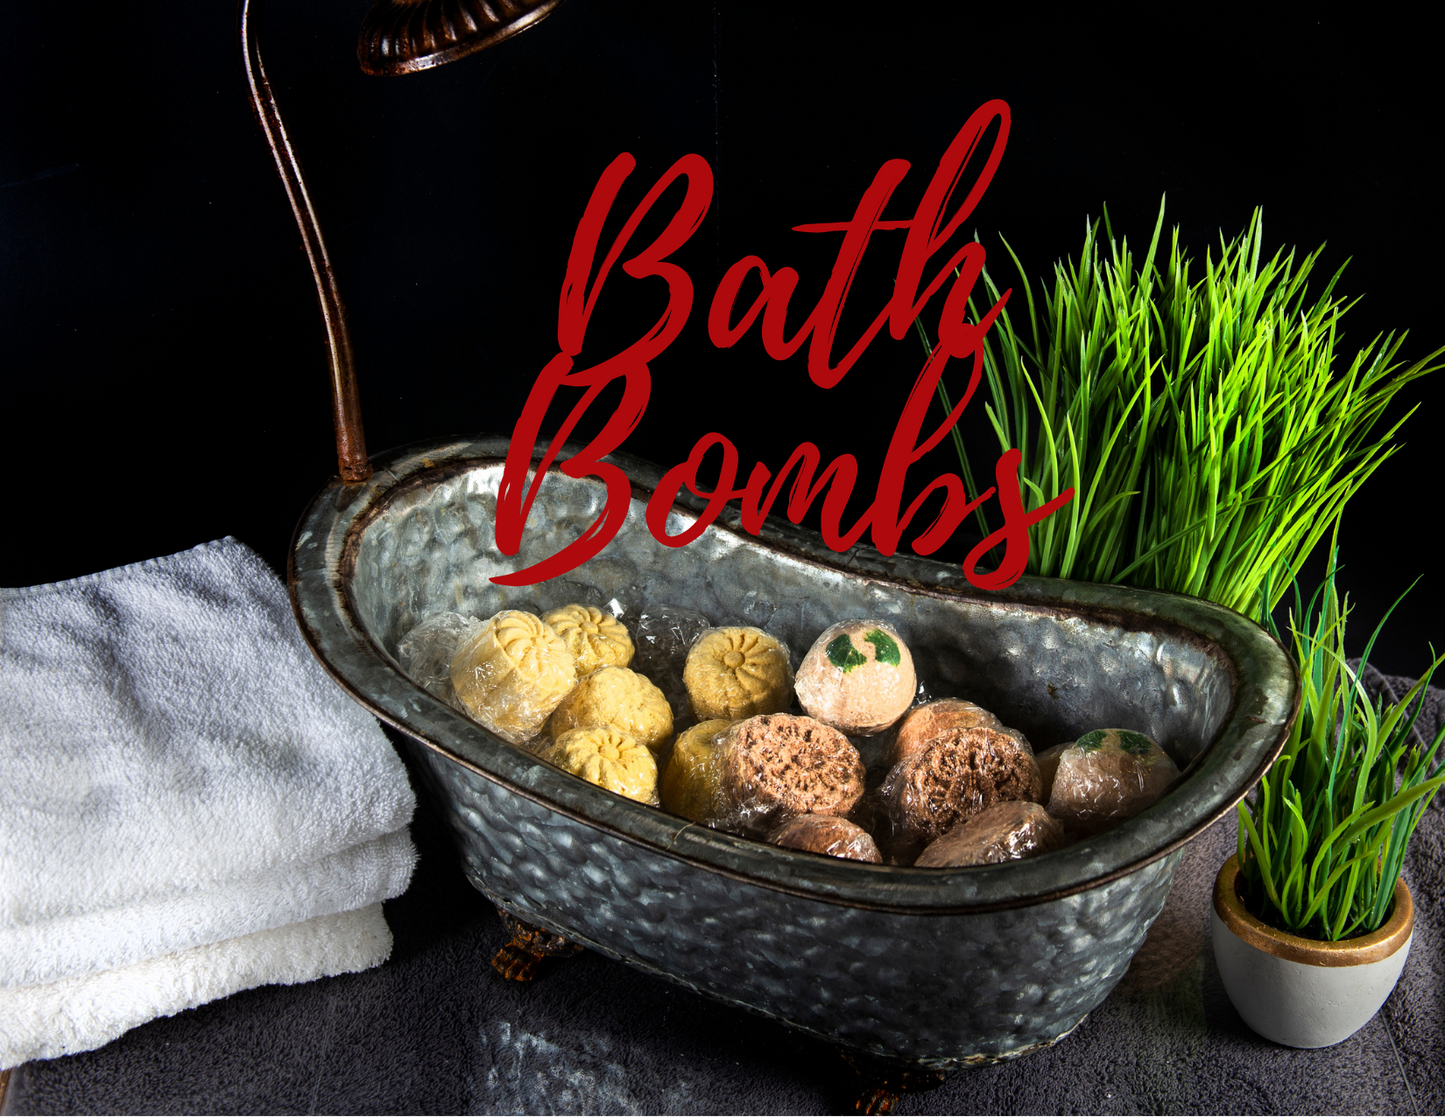 Bath Bombs